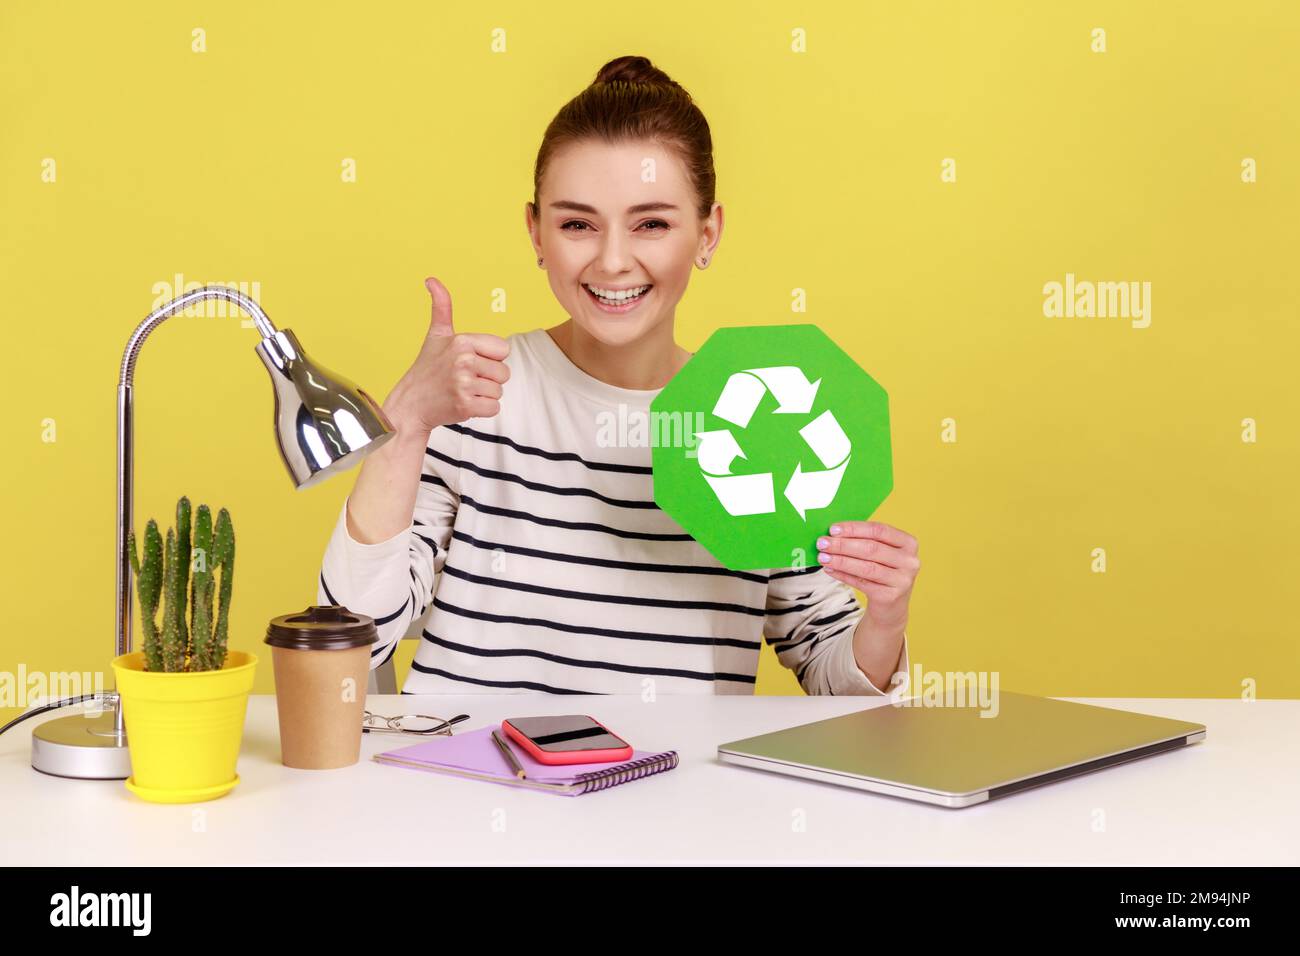 Responsable positif souriant bonne femme tenant main l'affiche de recyclage verte et montrant le pouce vers le haut, assis sur le lieu de travail avec un ordinateur portable. Studio d'intérieur tourné isolé sur fond jaune. Banque D'Images